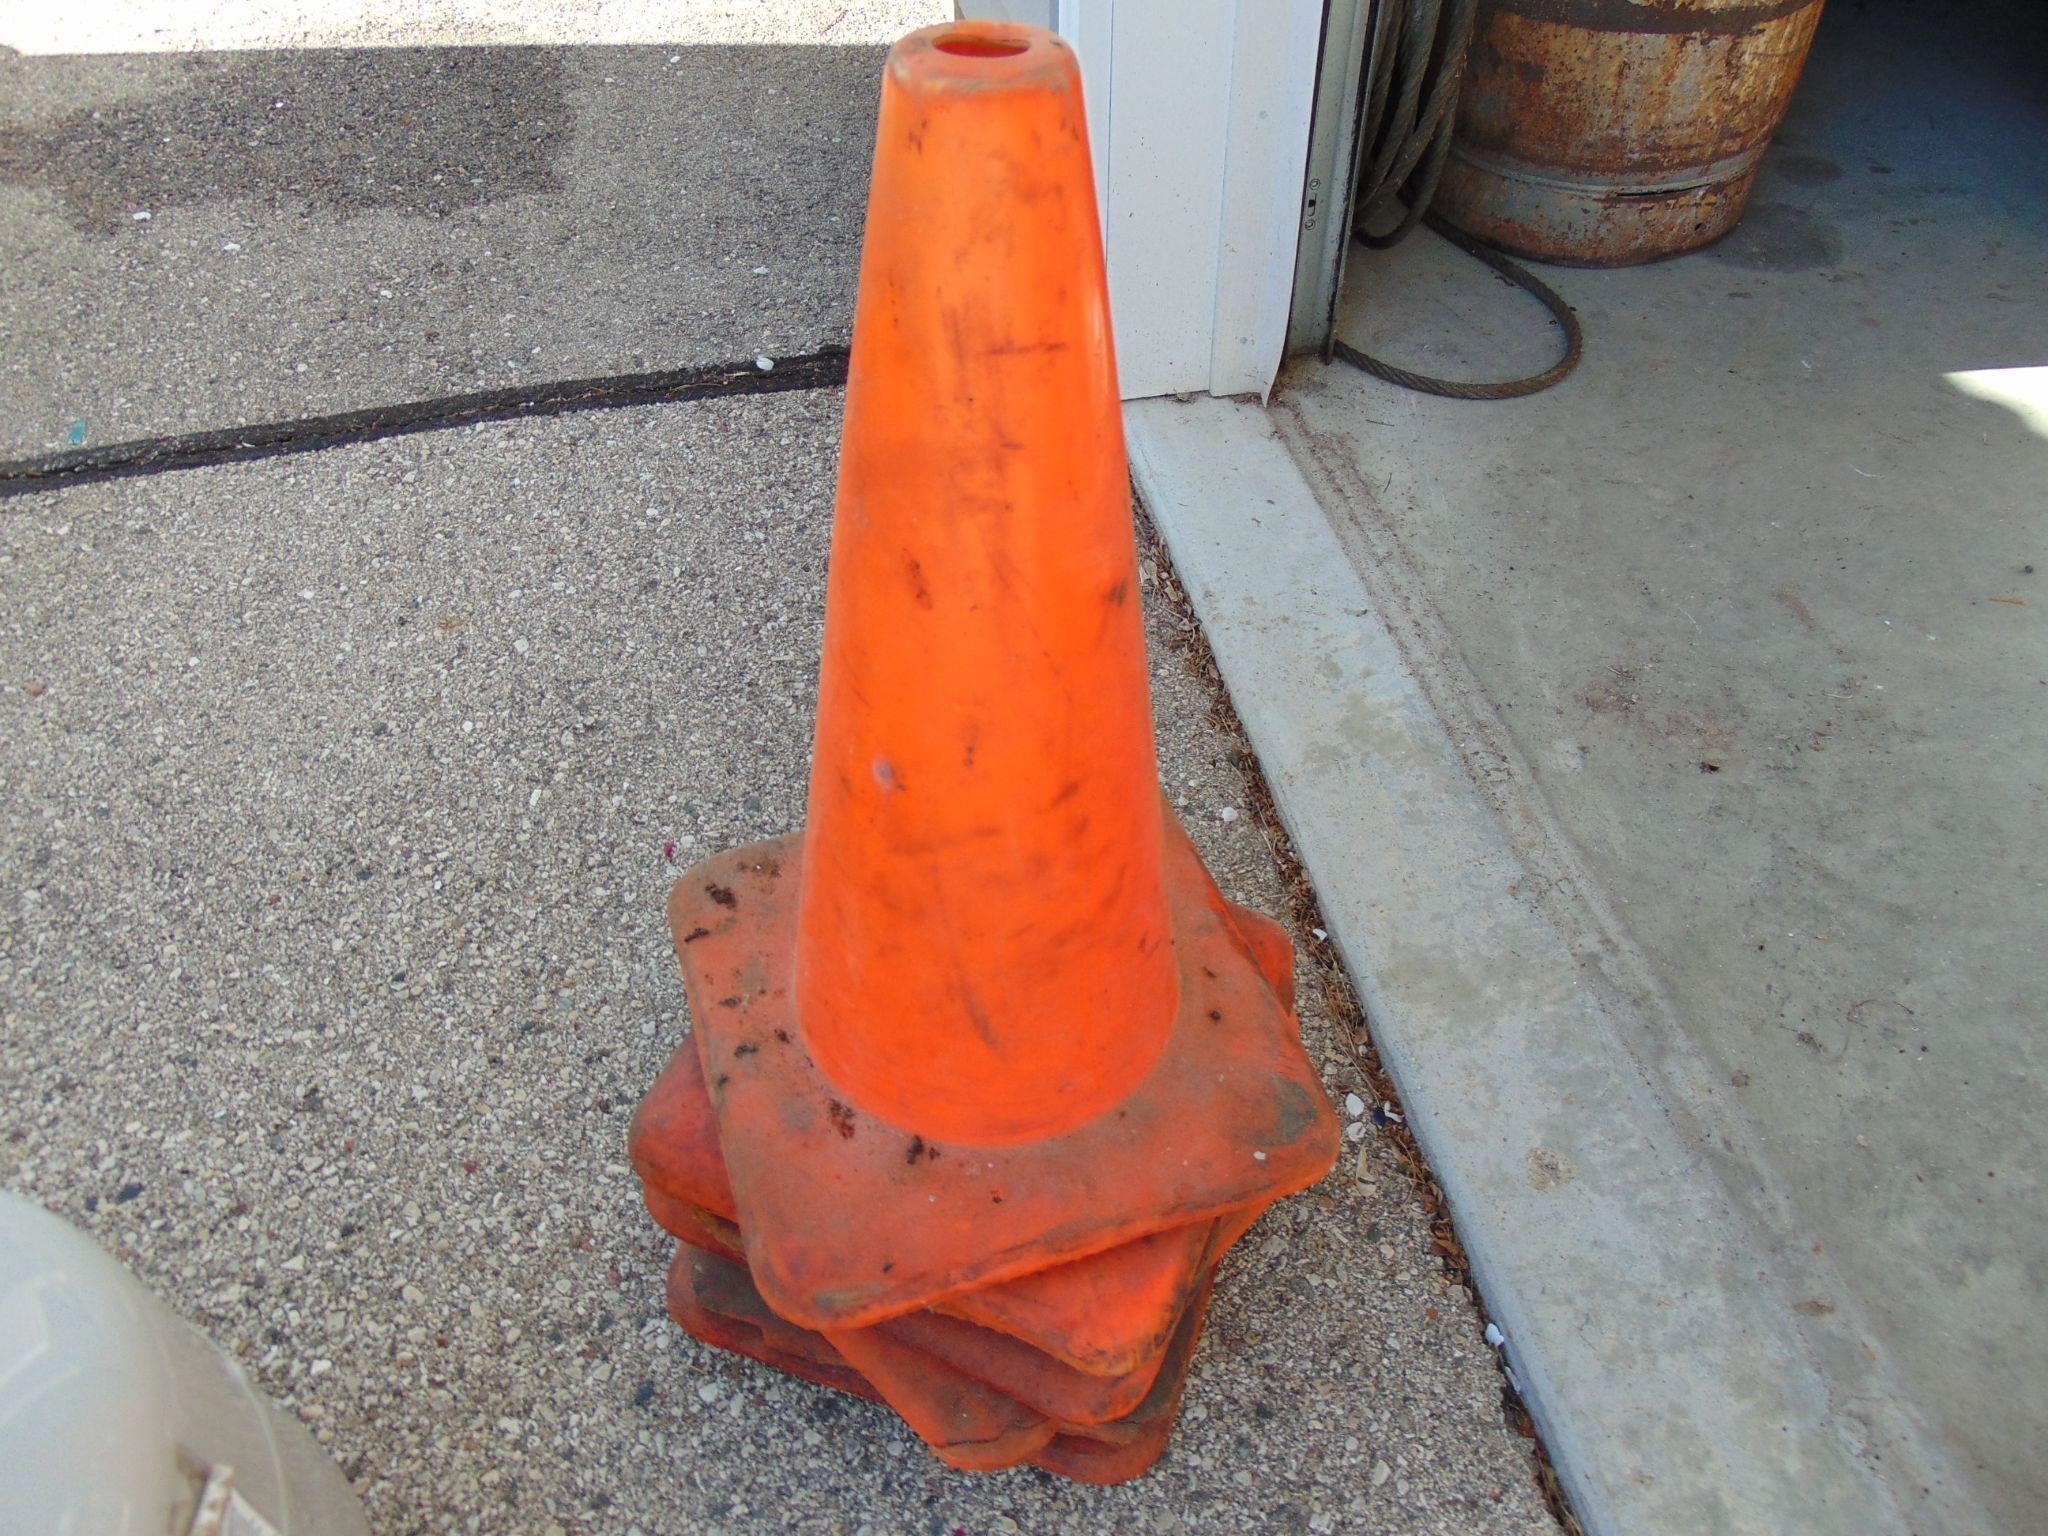 Five Orange Safety Cones